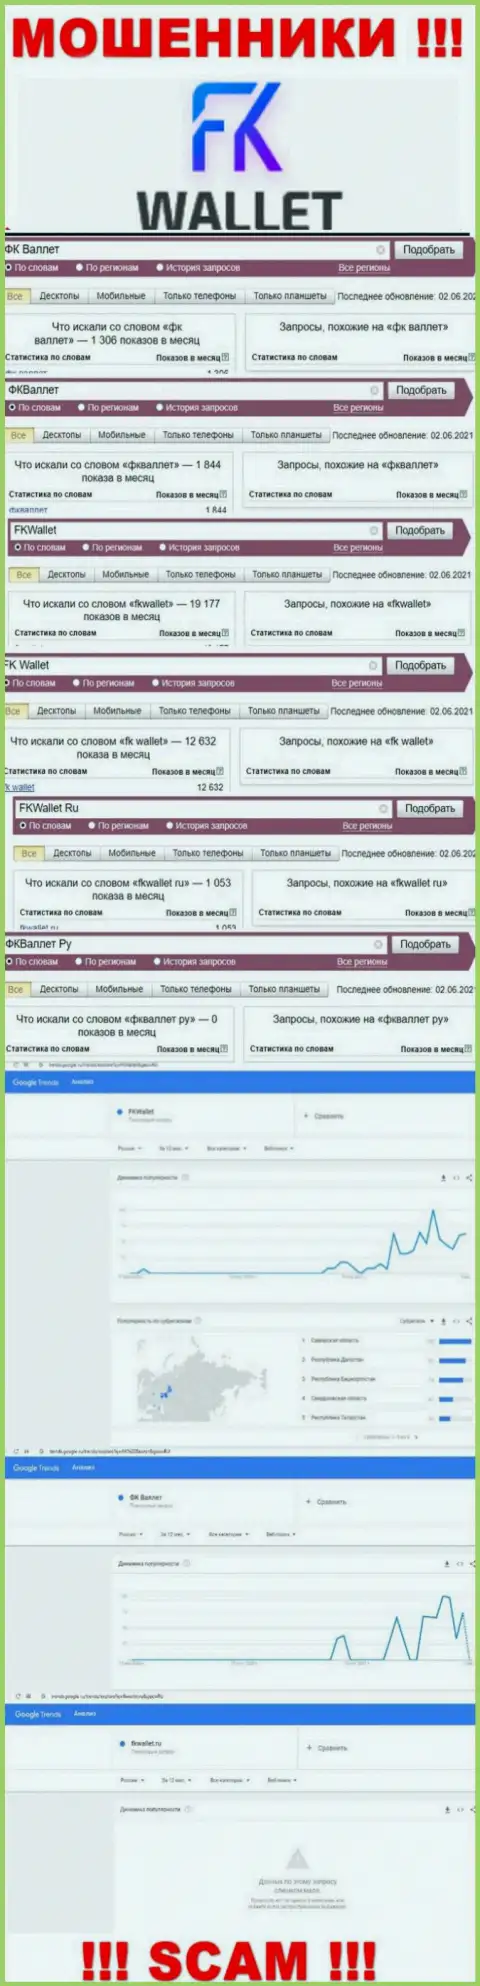 Скриншот статистики онлайн-запросов по неправомерно действующей организации FKWallet Ru